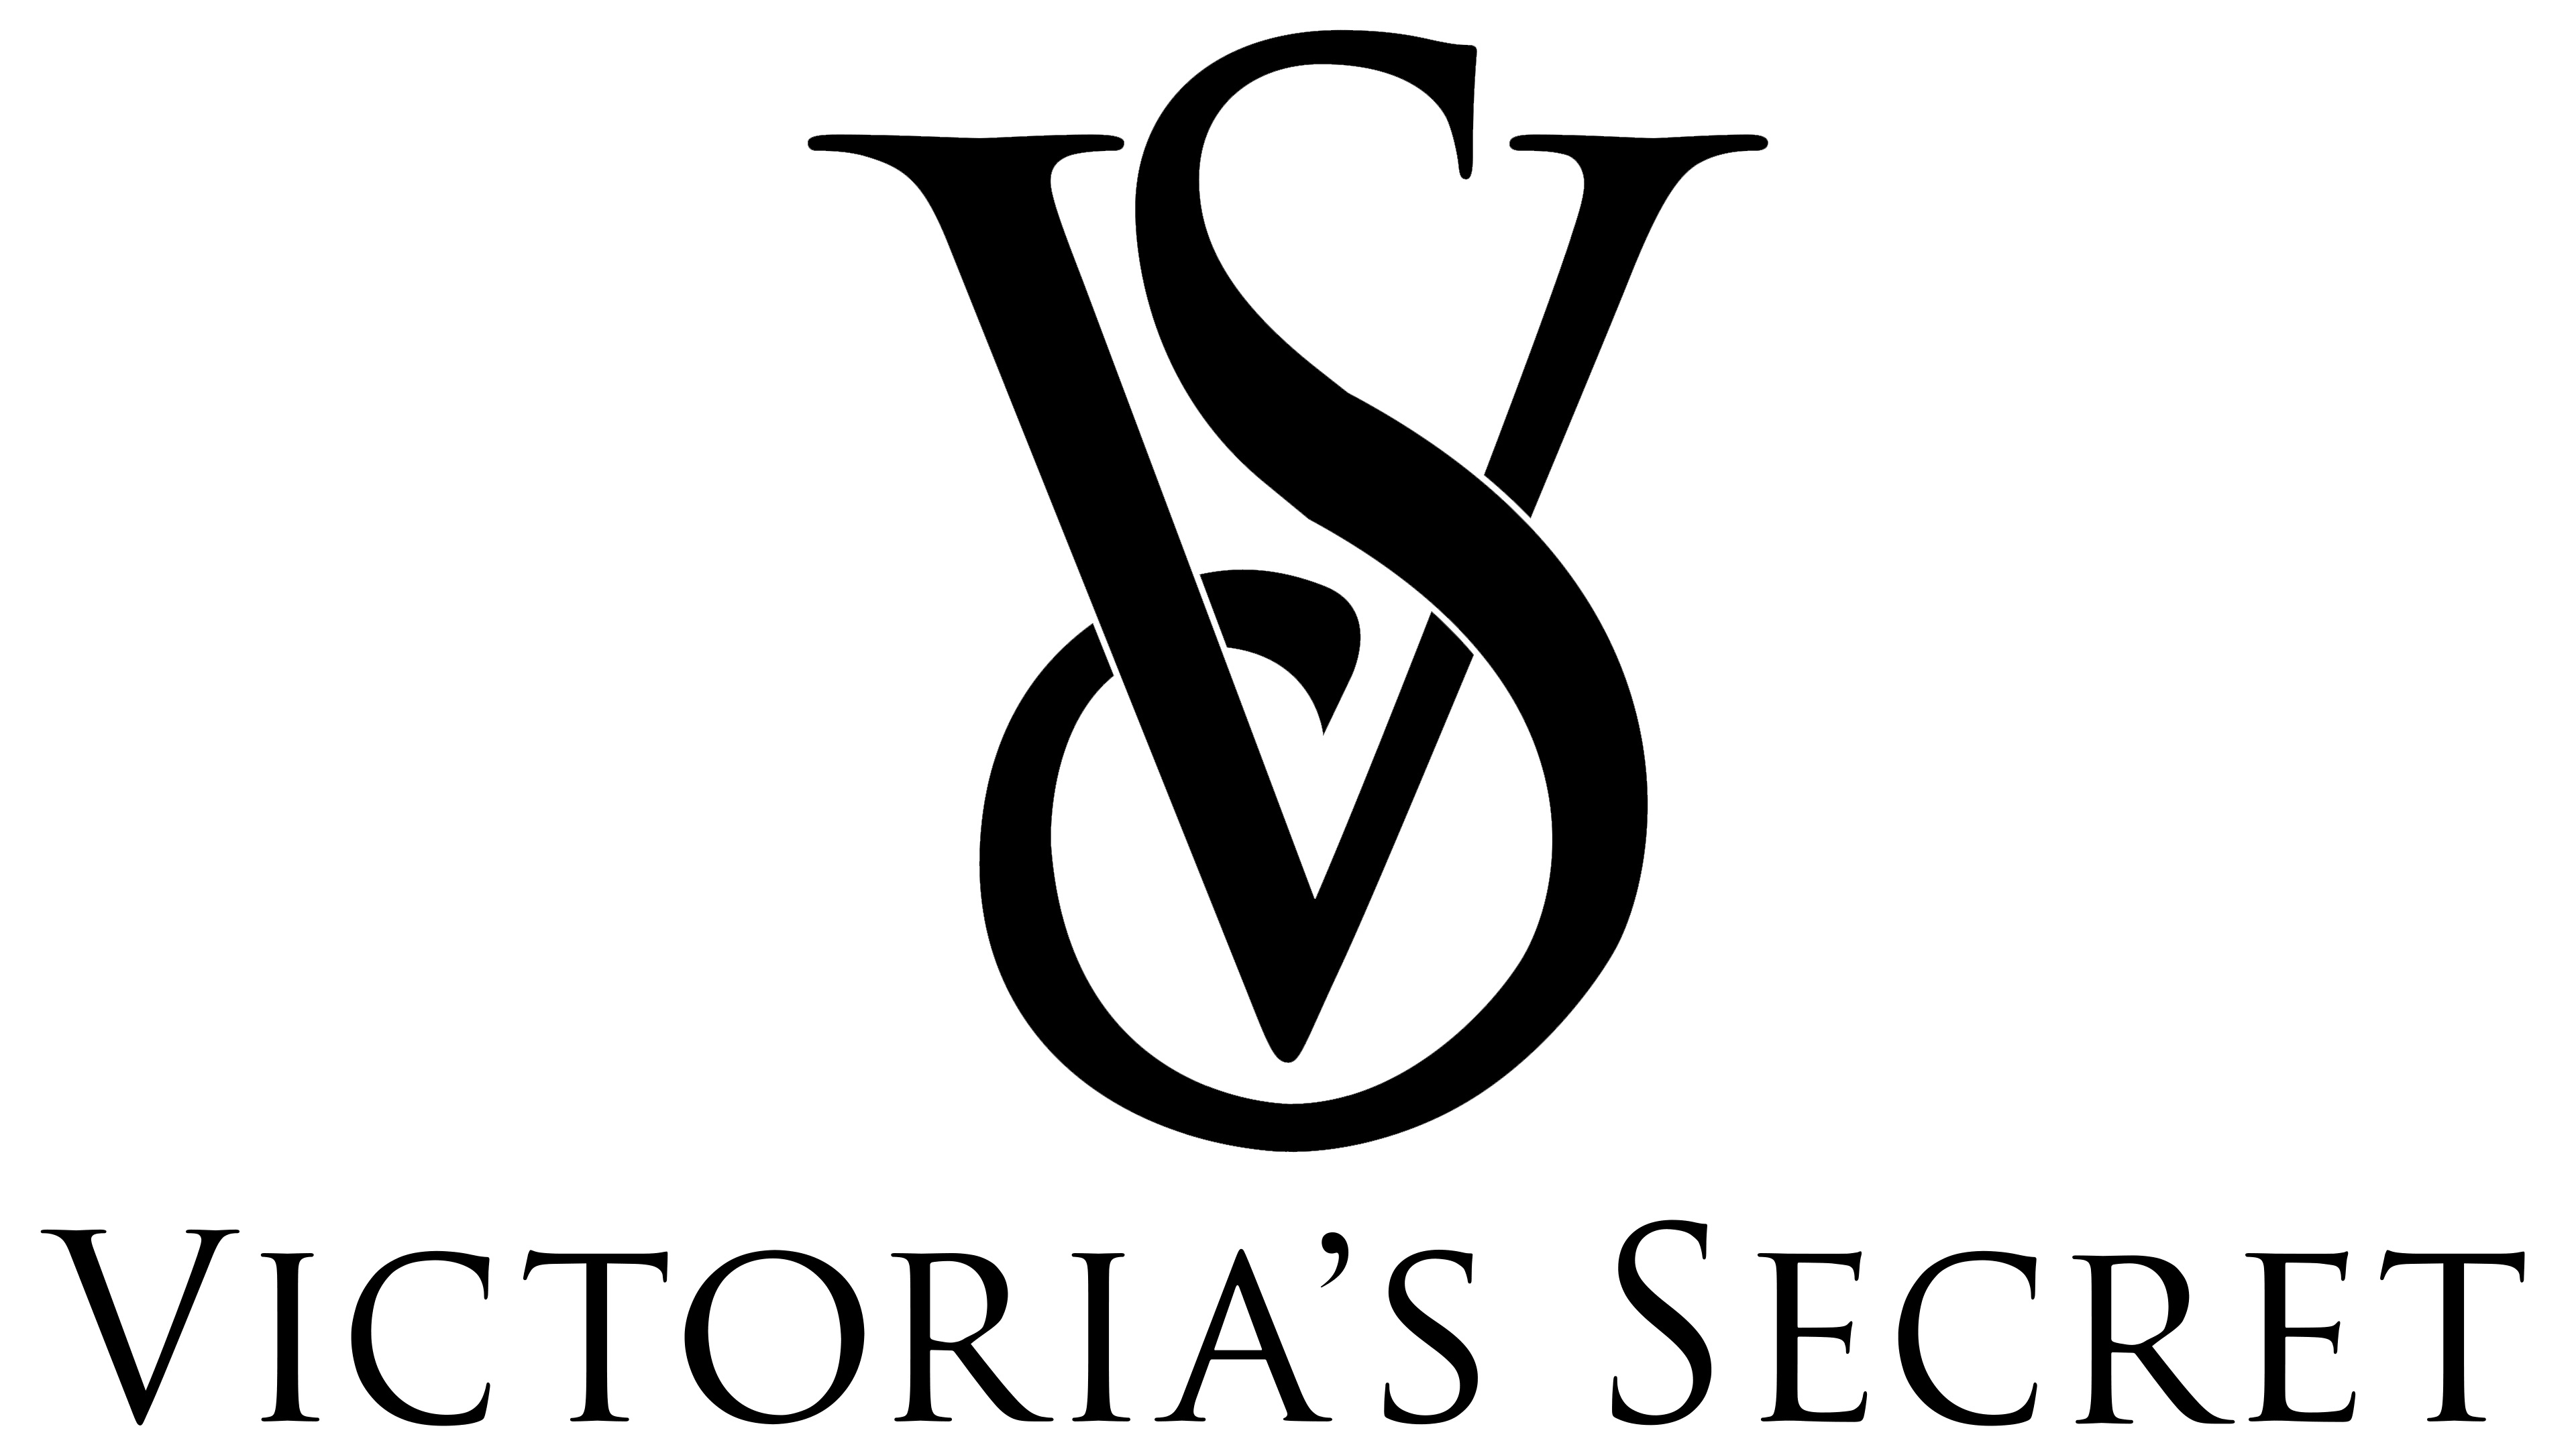 Victorias secret 36b dream - Gem